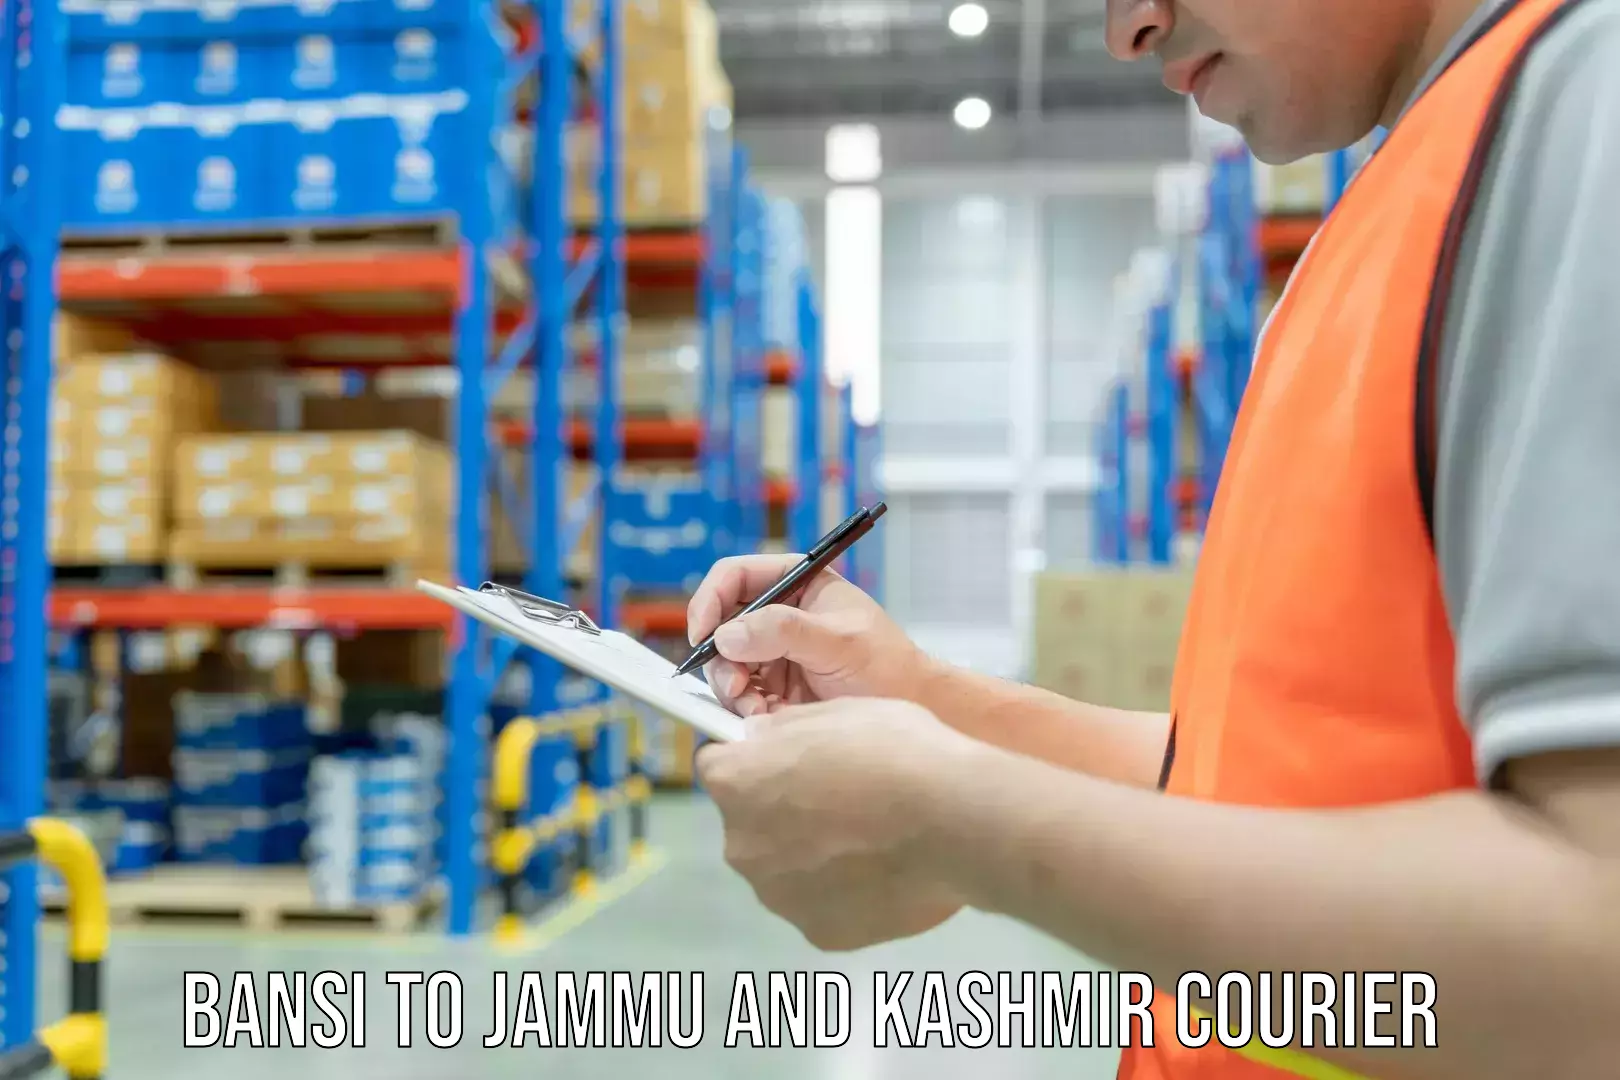 Express courier facilities Bansi to Jammu and Kashmir